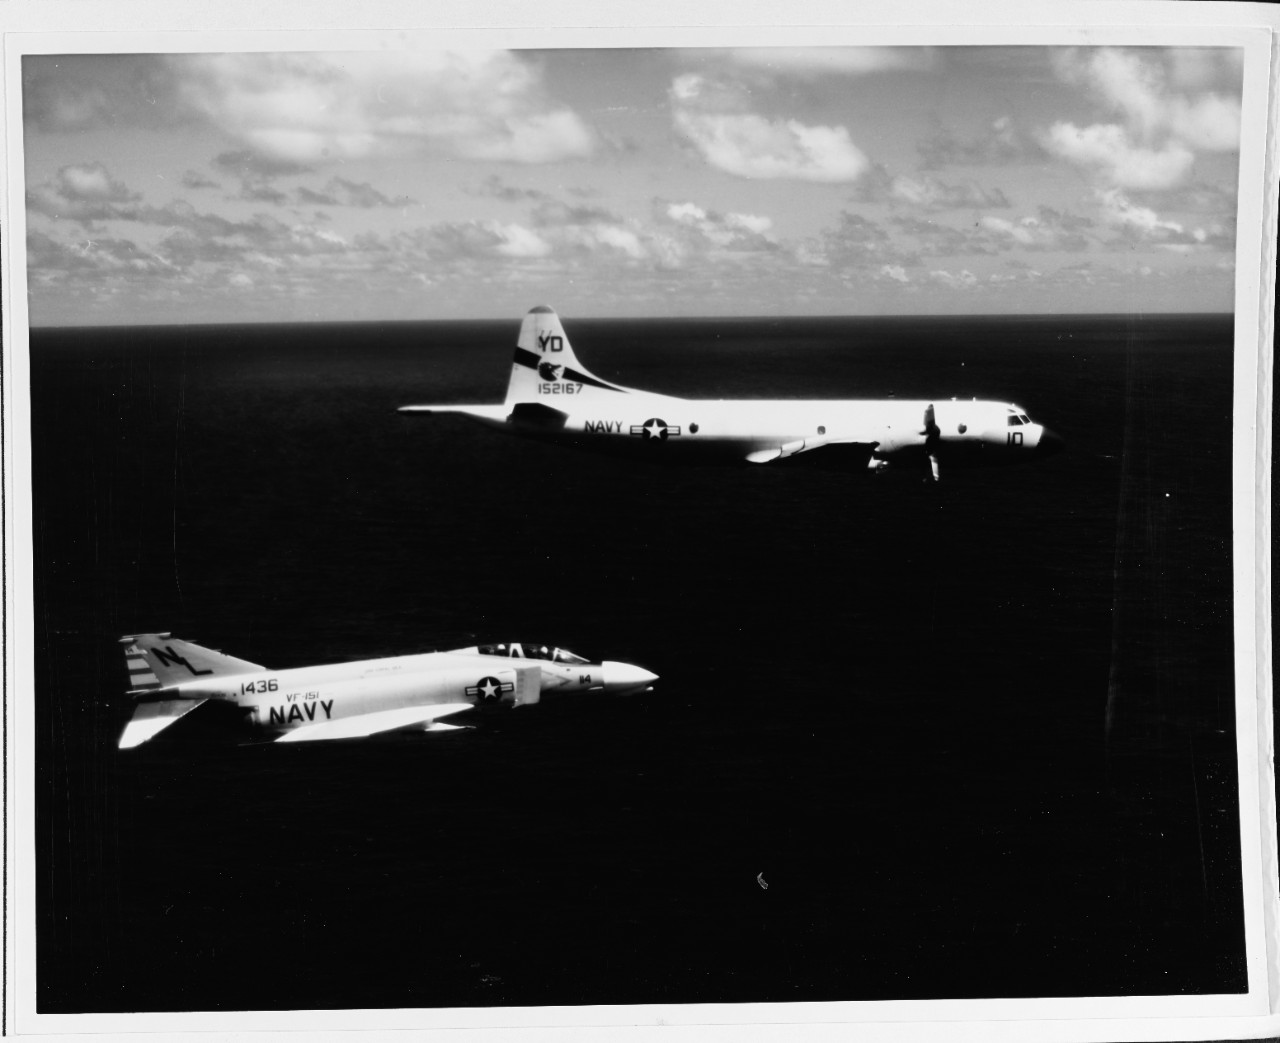 F-4B "Phantom 11" and P-3A "Orion" aircraft